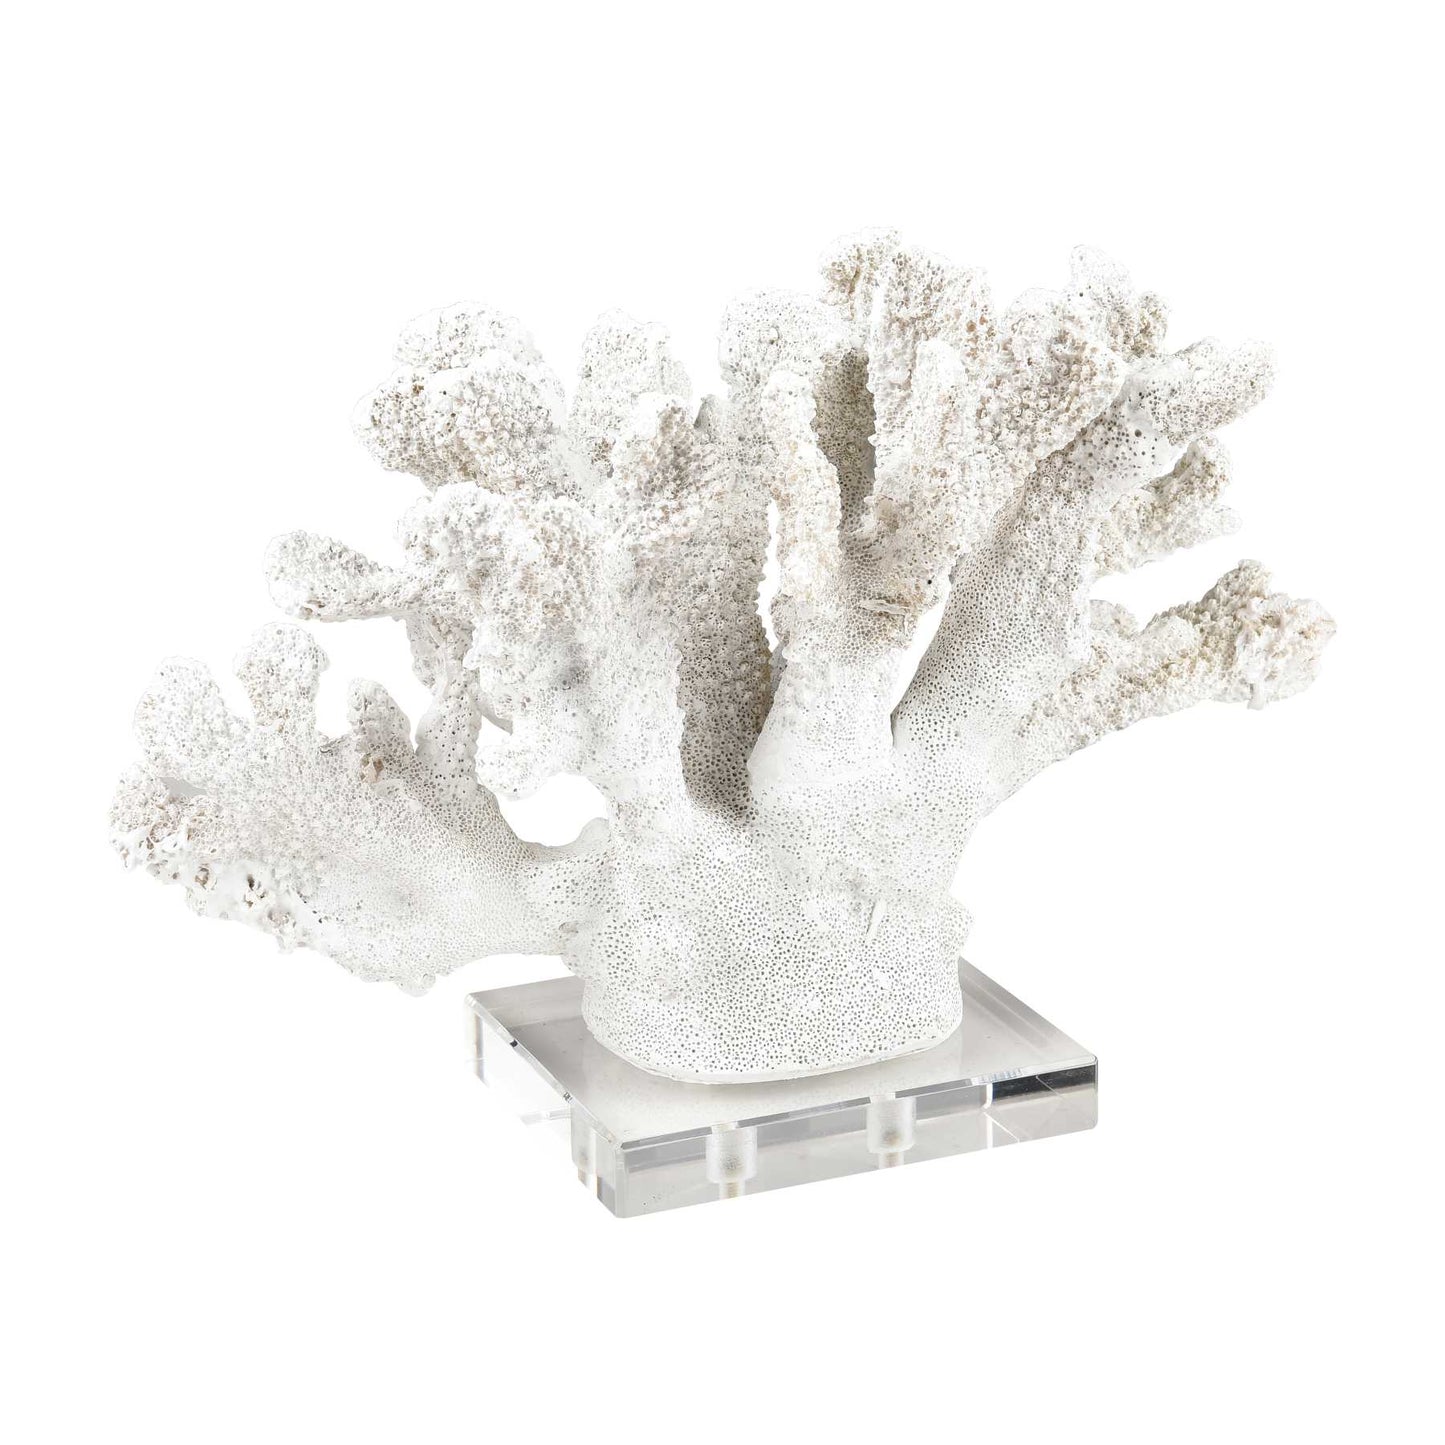 Coral Sculptures - Set Of 2 By ELK |Sculptures |Modishstore - 3